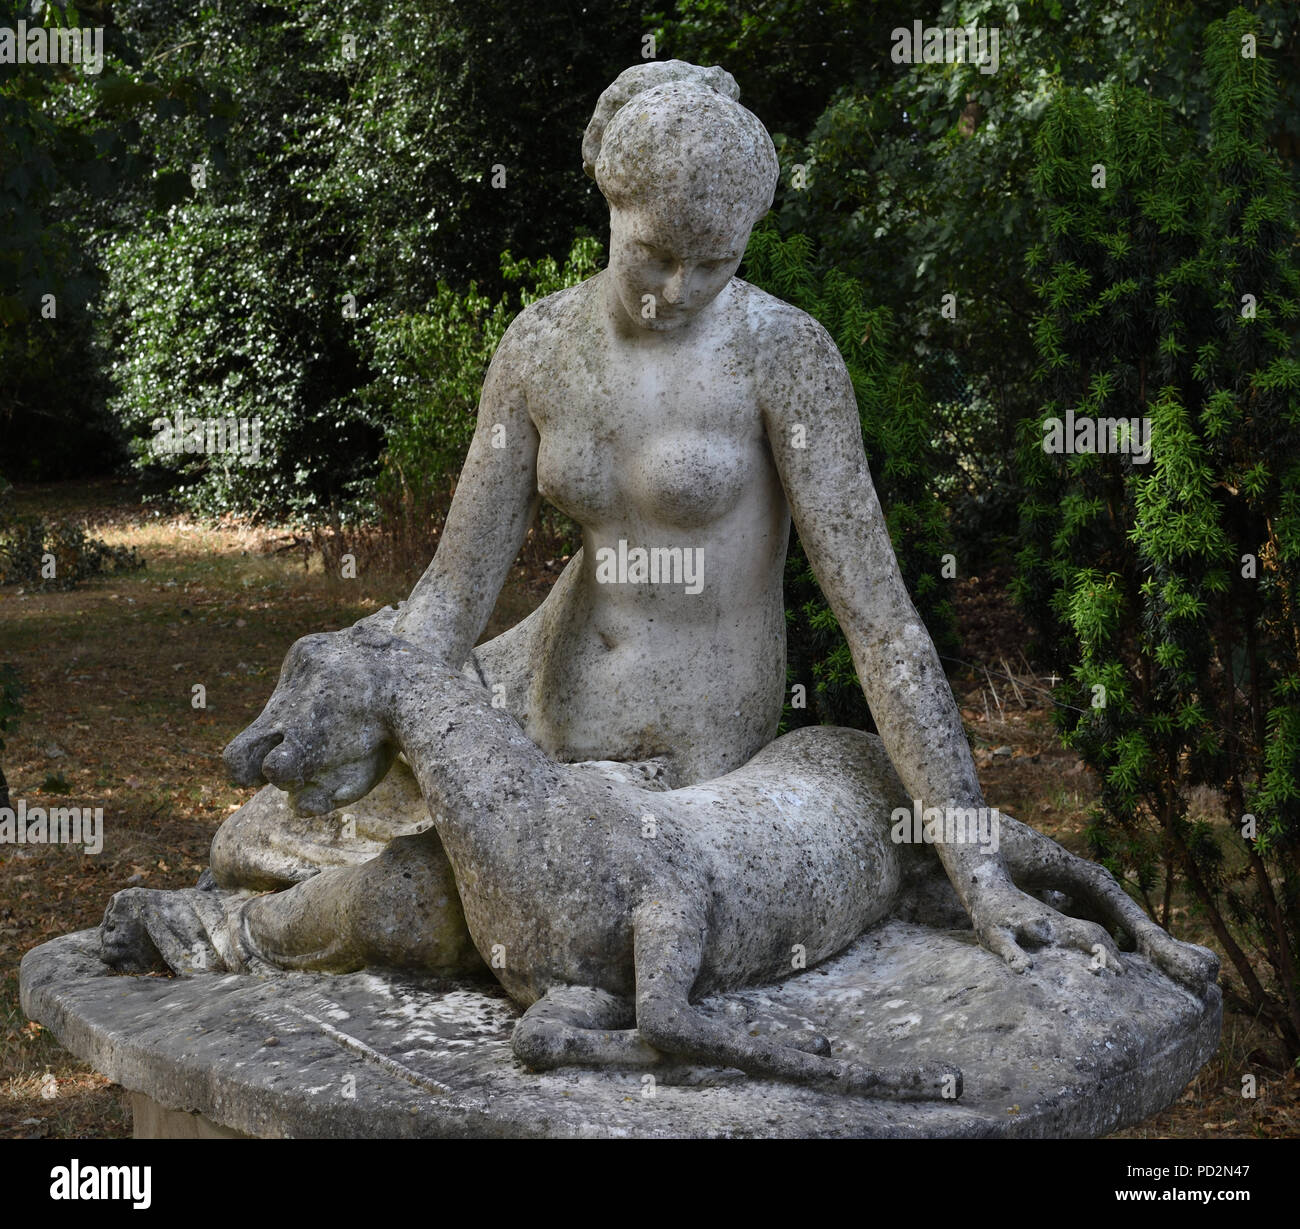 4 agosto 2018, Cannizzaro Park, Wimbledon, Regno Unito. Statua di Diana e fulvo, creato nel 1841 e originariamente da una villa siciliana. Foto Stock